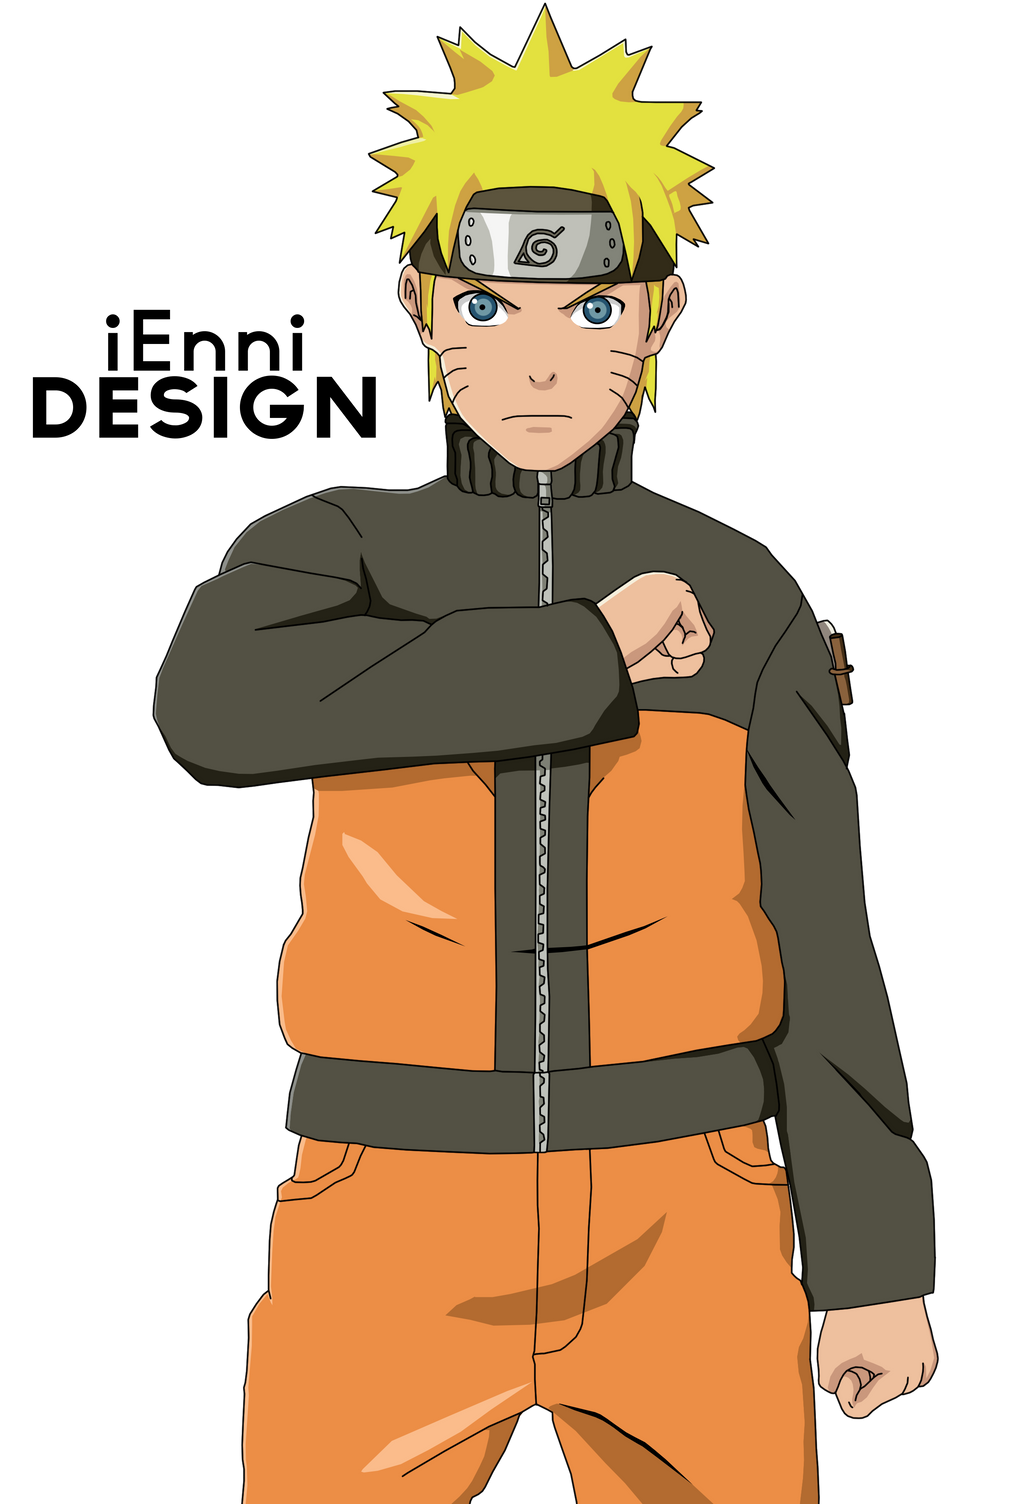 Naruto Shippuden: Naruto Uzumaki by iEnniDESIGN on DeviantArt